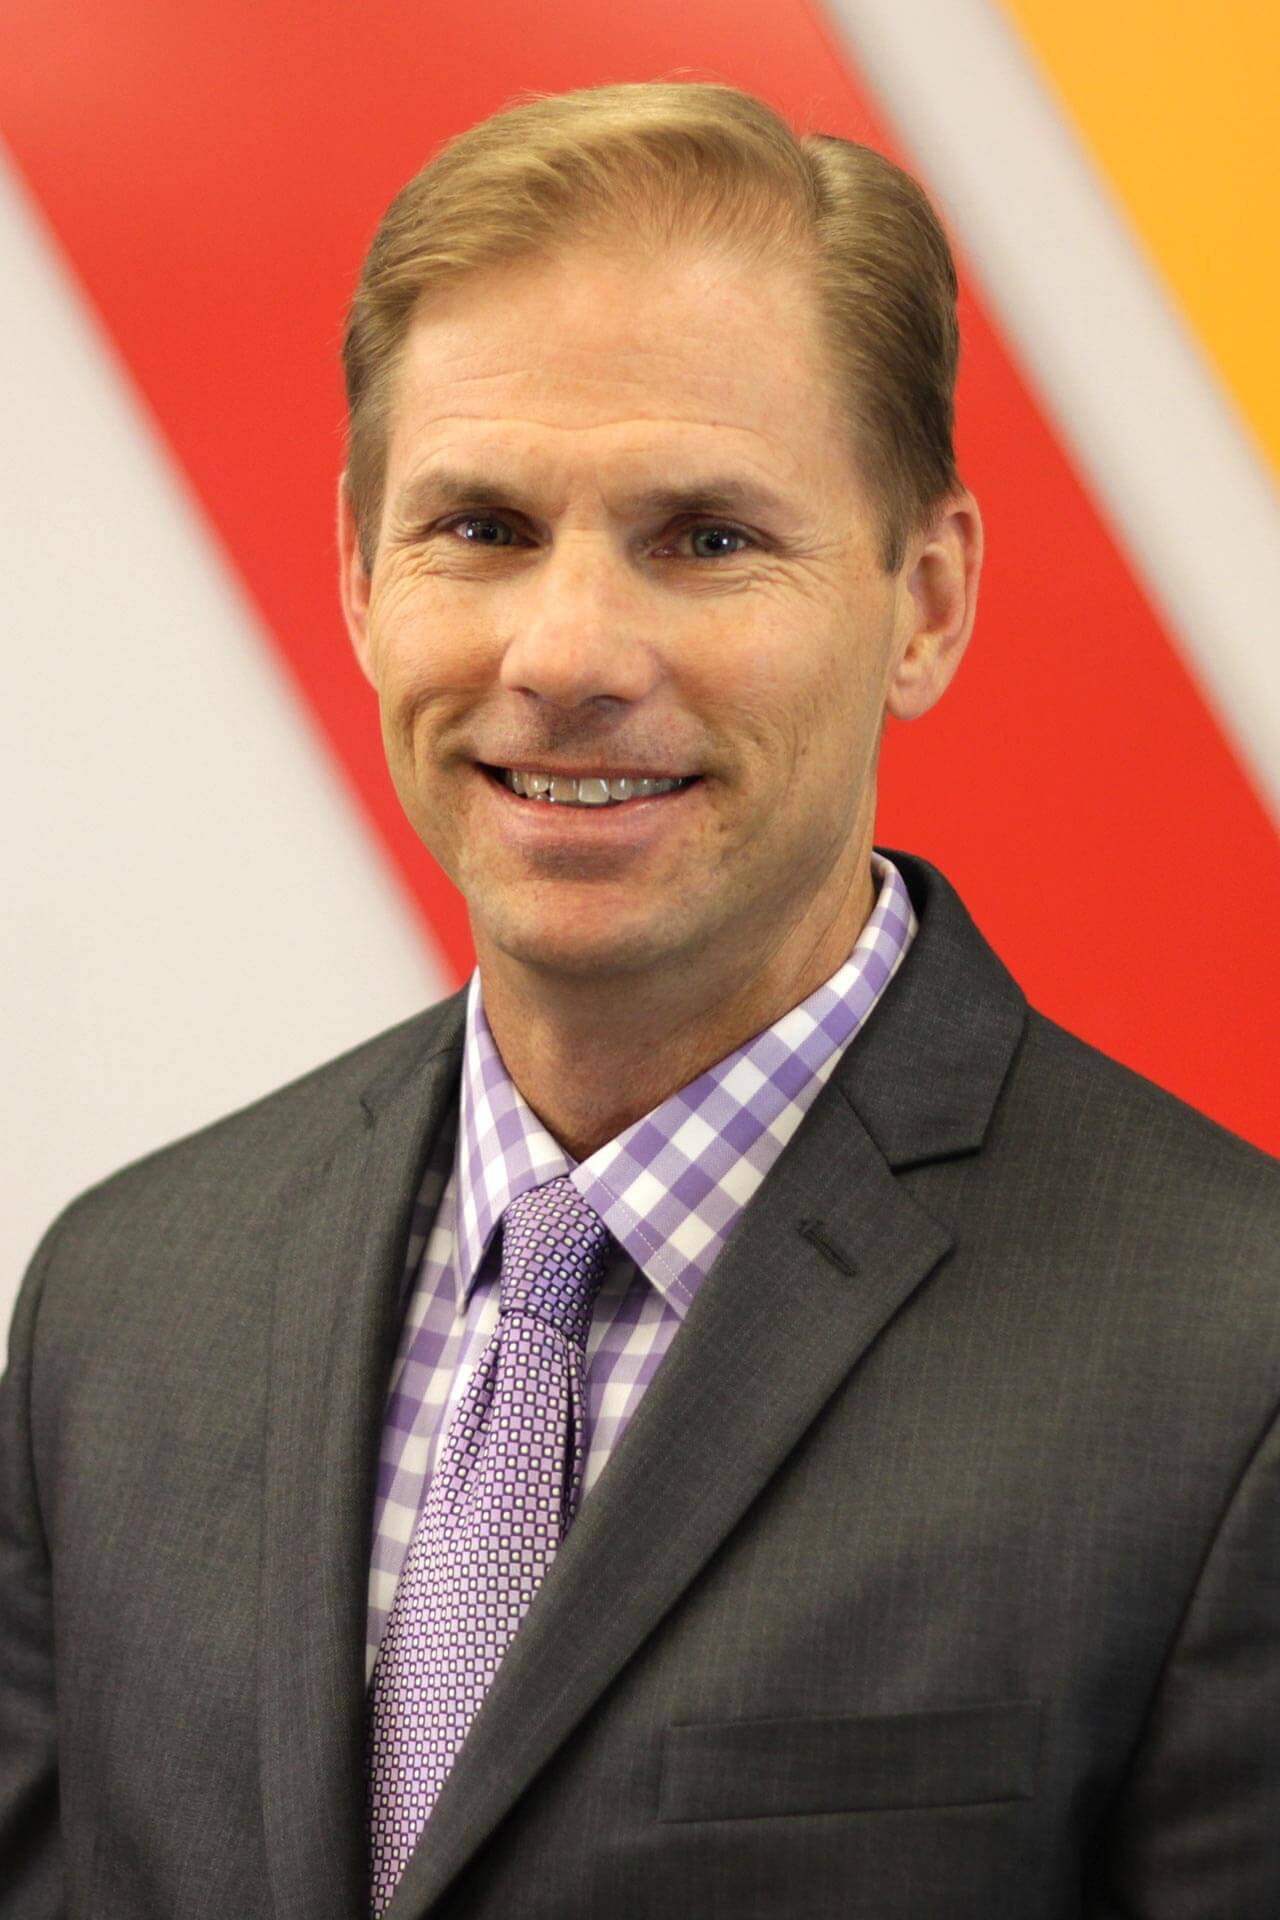 Portrait of Sean Doles - VP of Mission Advancement